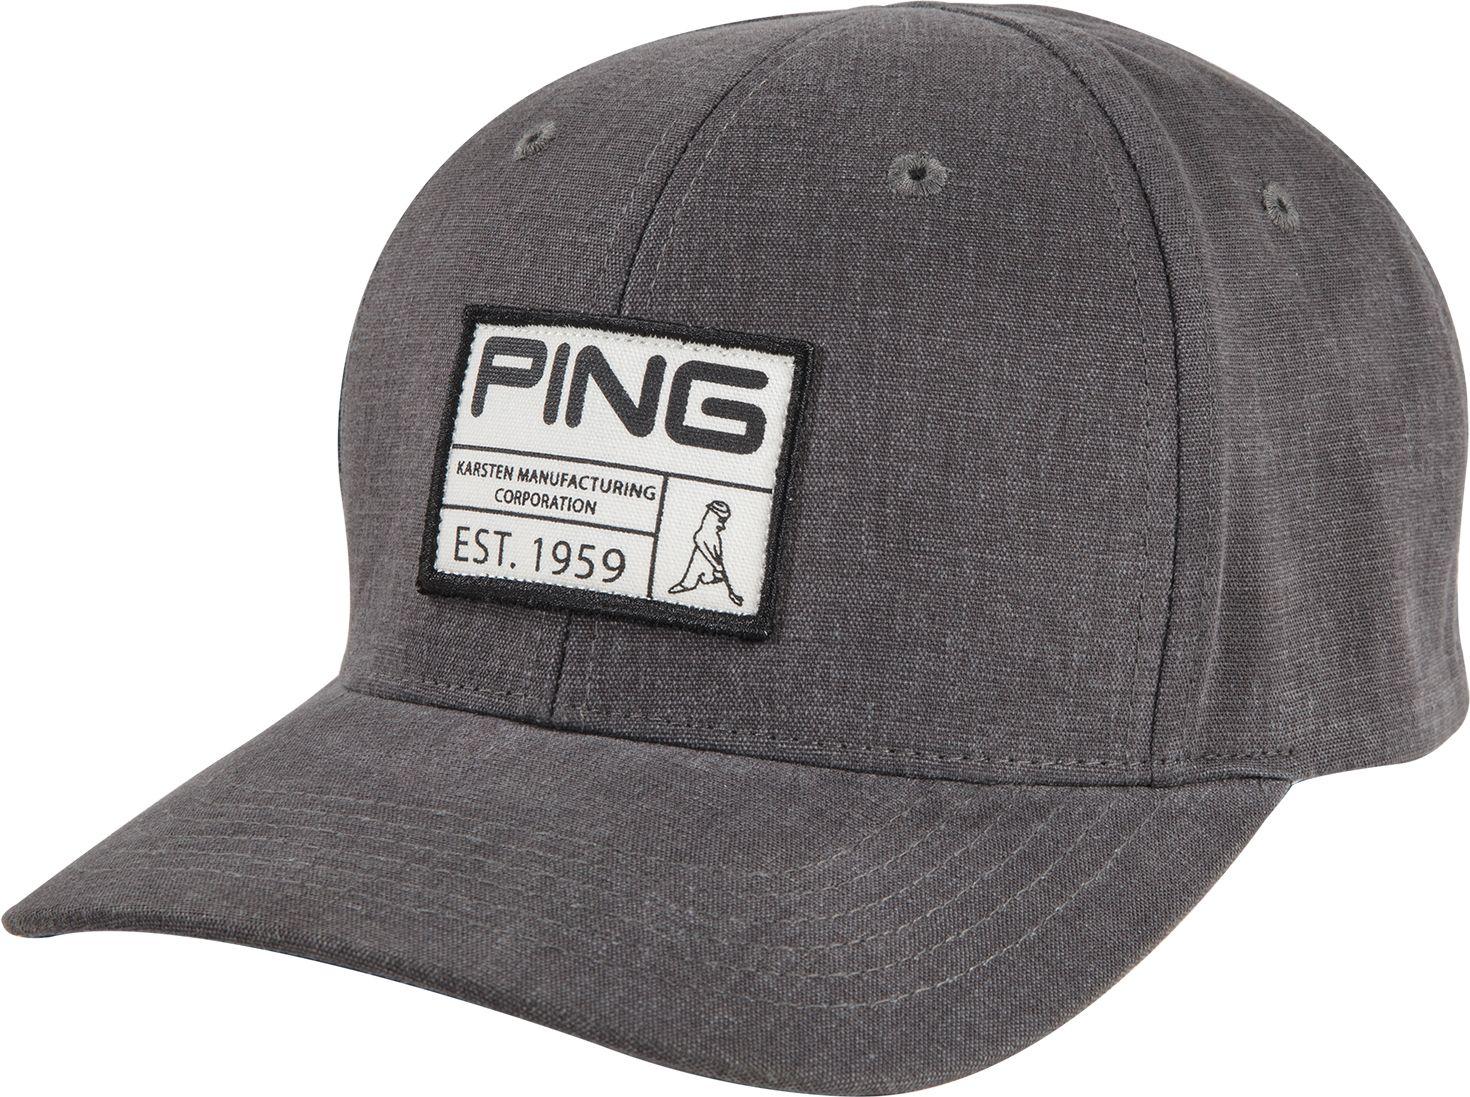 Vintage Golf Hats For Men - 02/2022